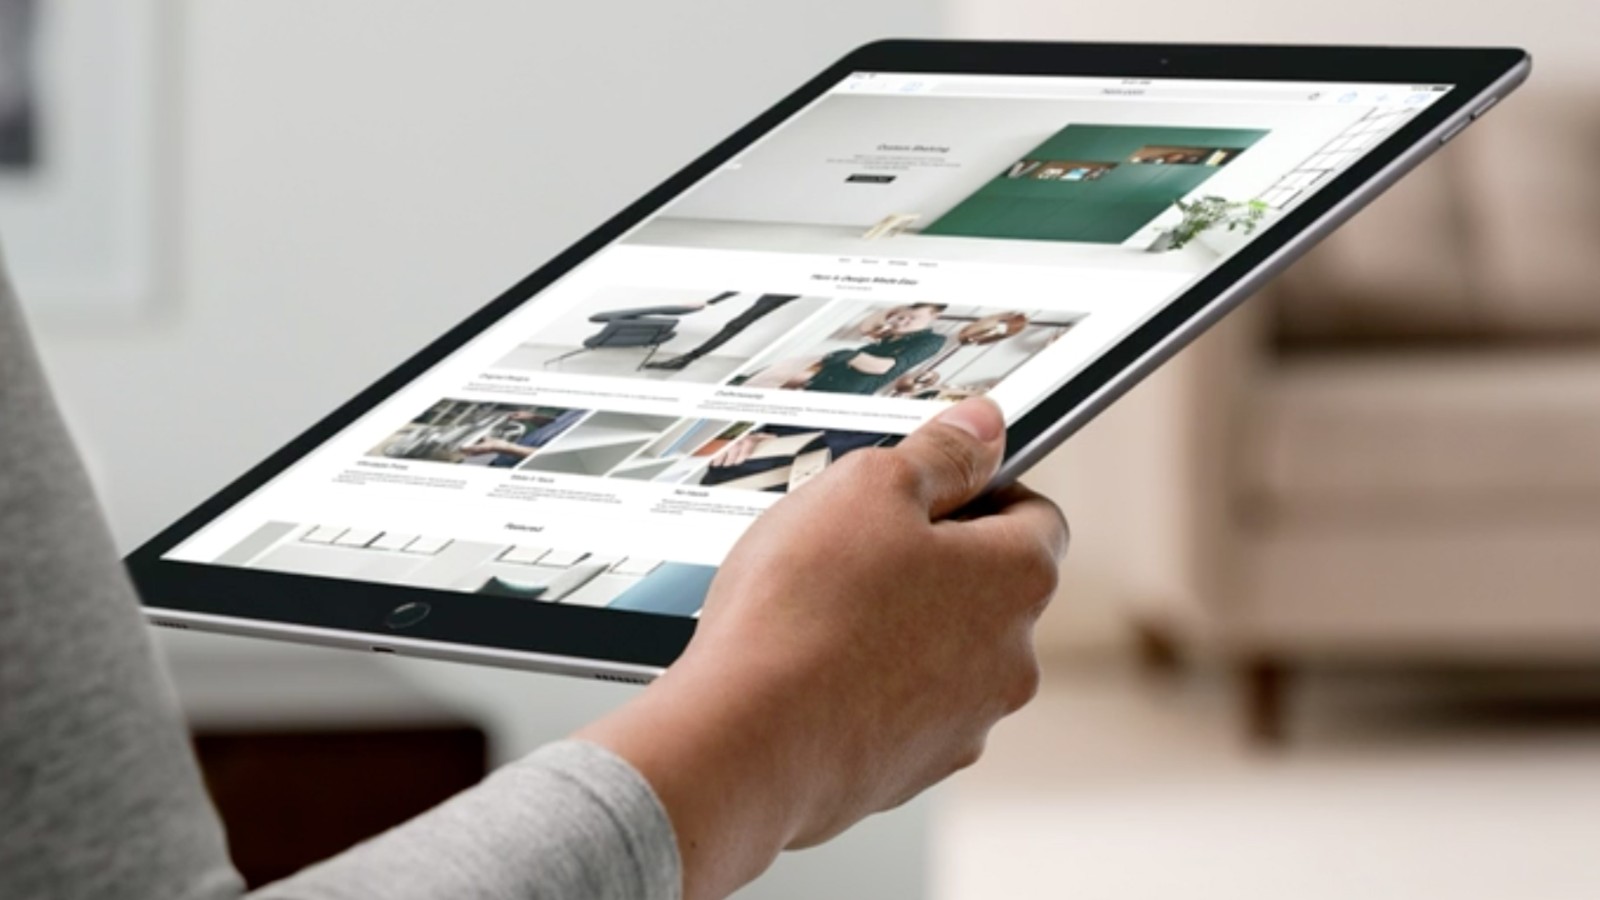 Сможет ли iPad Pro превзойти успех iPad 2?